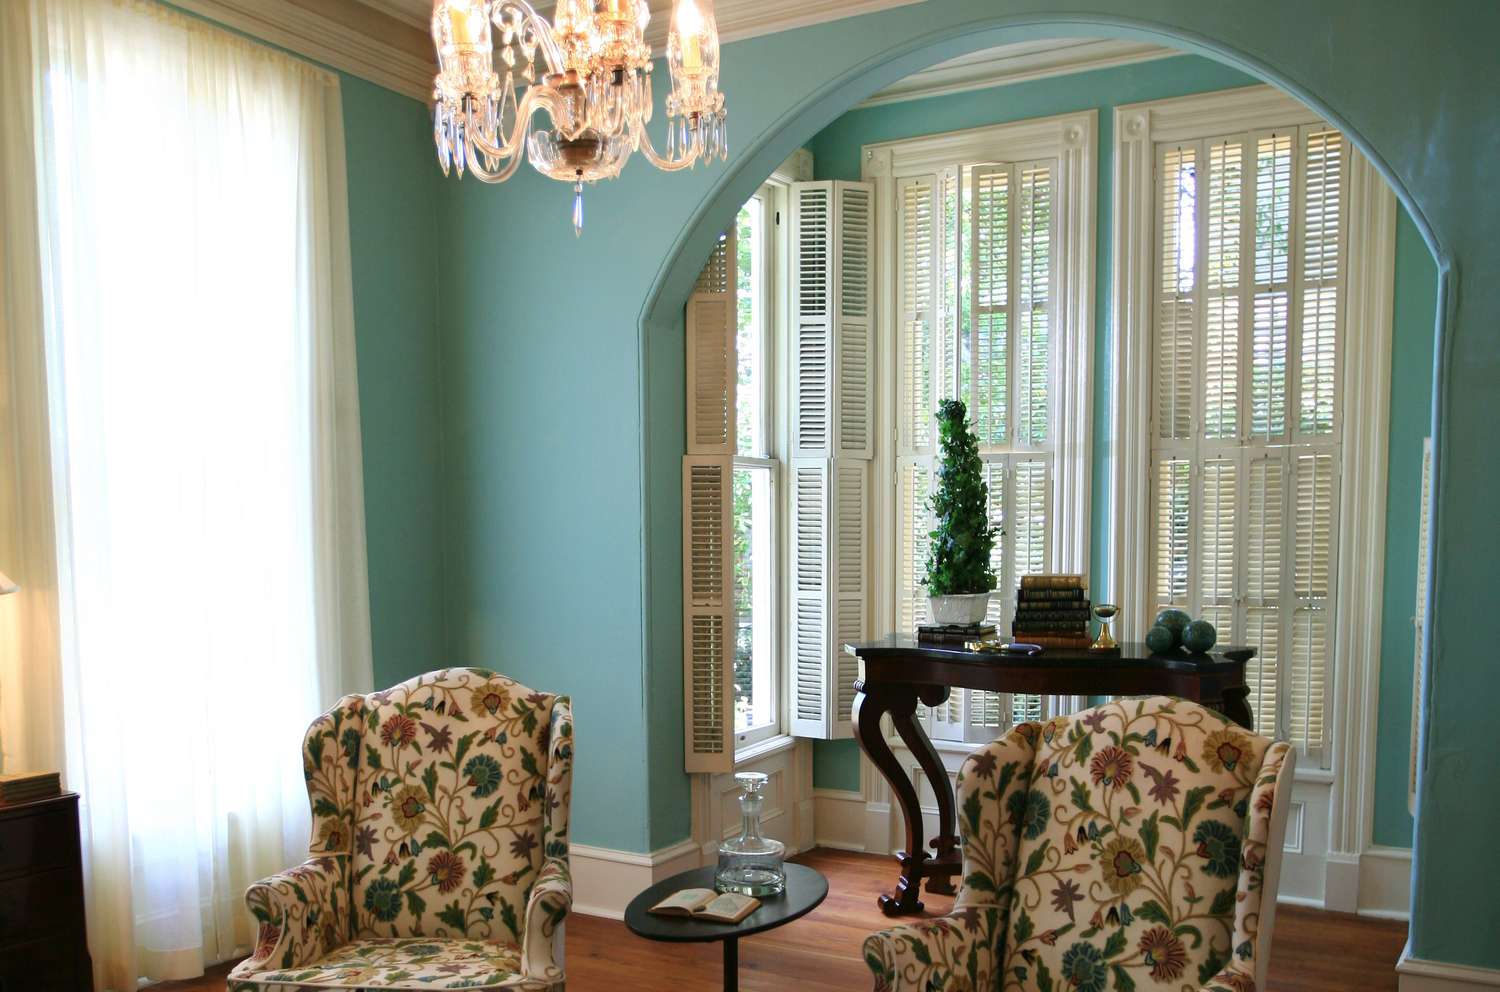 Pared de color azul verdoso con recorte en arco con ventanas de suelo a techo en extensión de cuatro paredes poco profundas -- muebles de época y suelos de madera